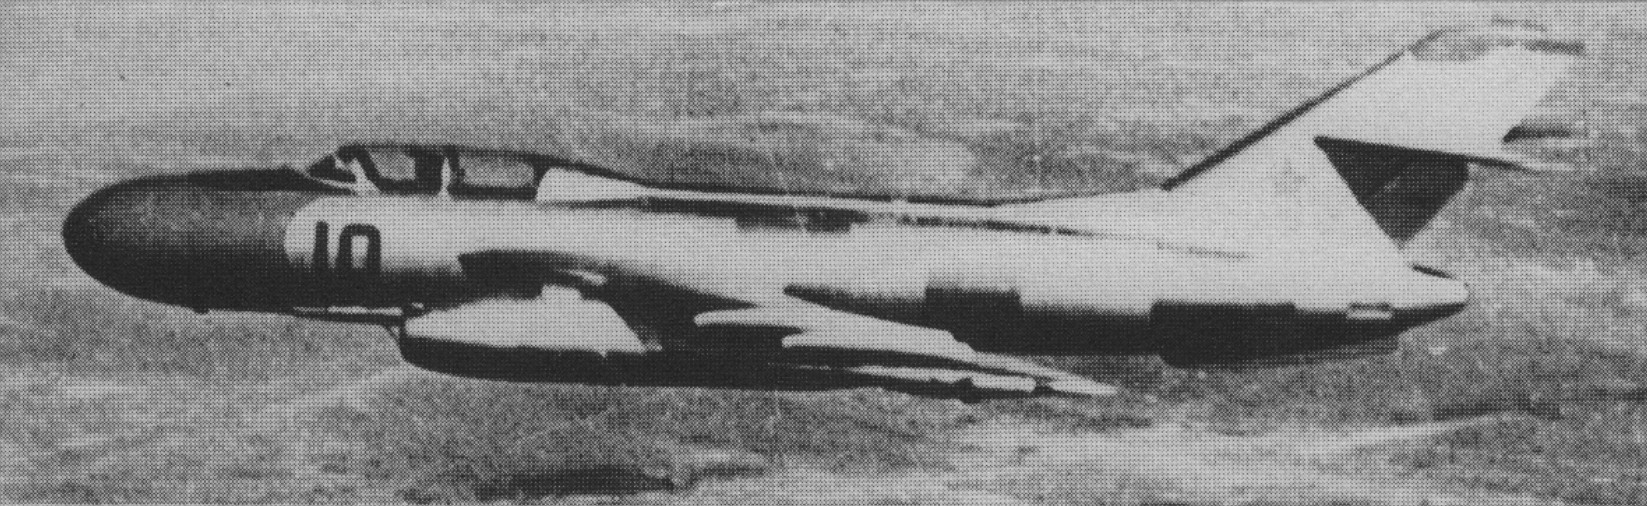 Samolot OKB Jakowlew Jak-25 M. Zdjęcie LAC